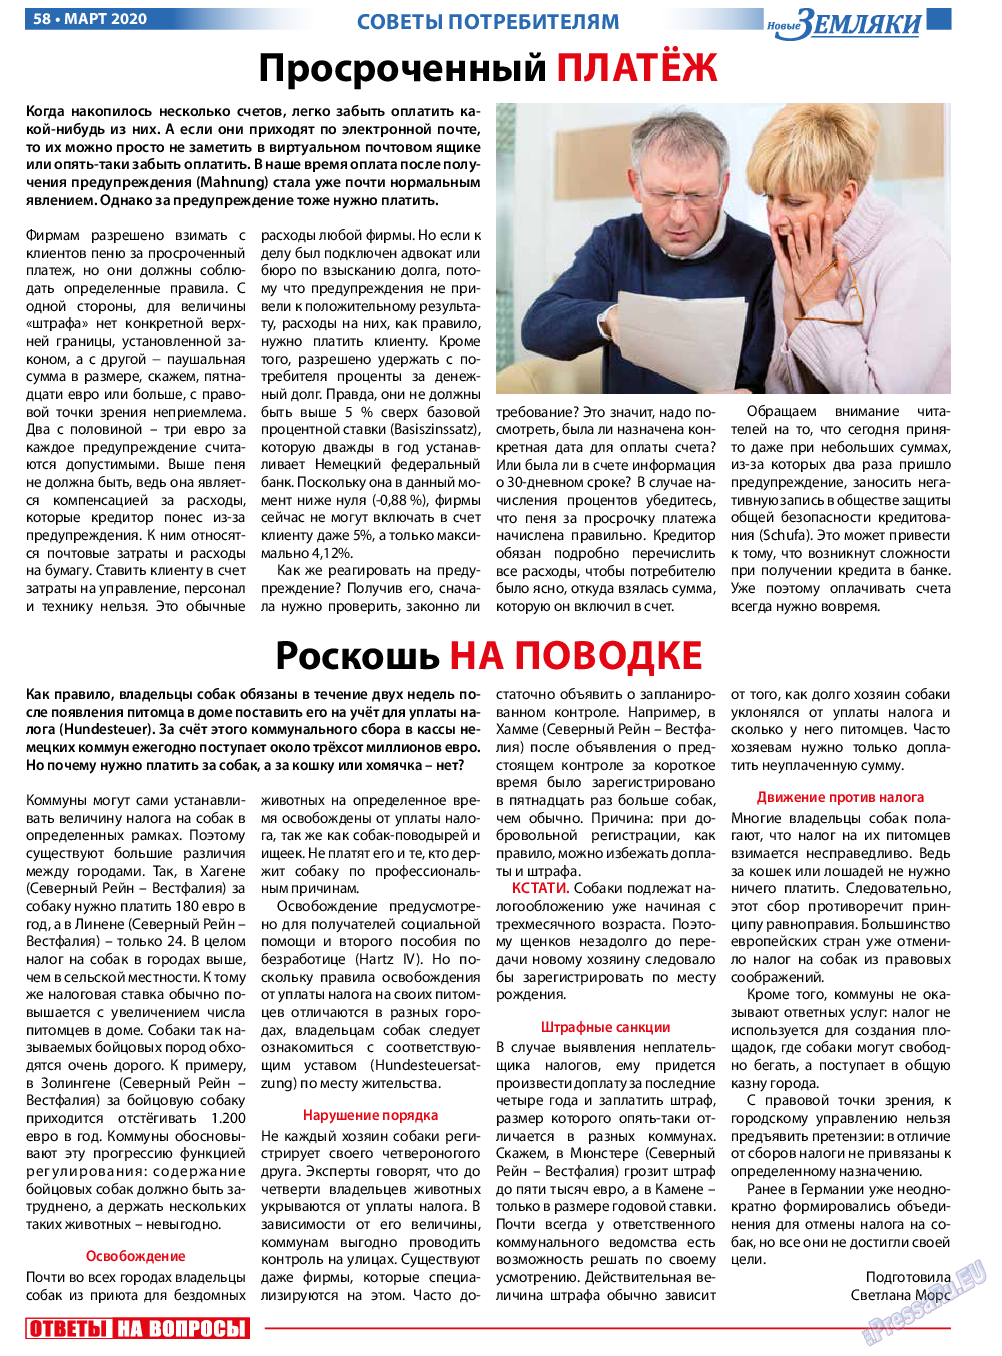 Новые Земляки, газета. 2020 №3 стр.58